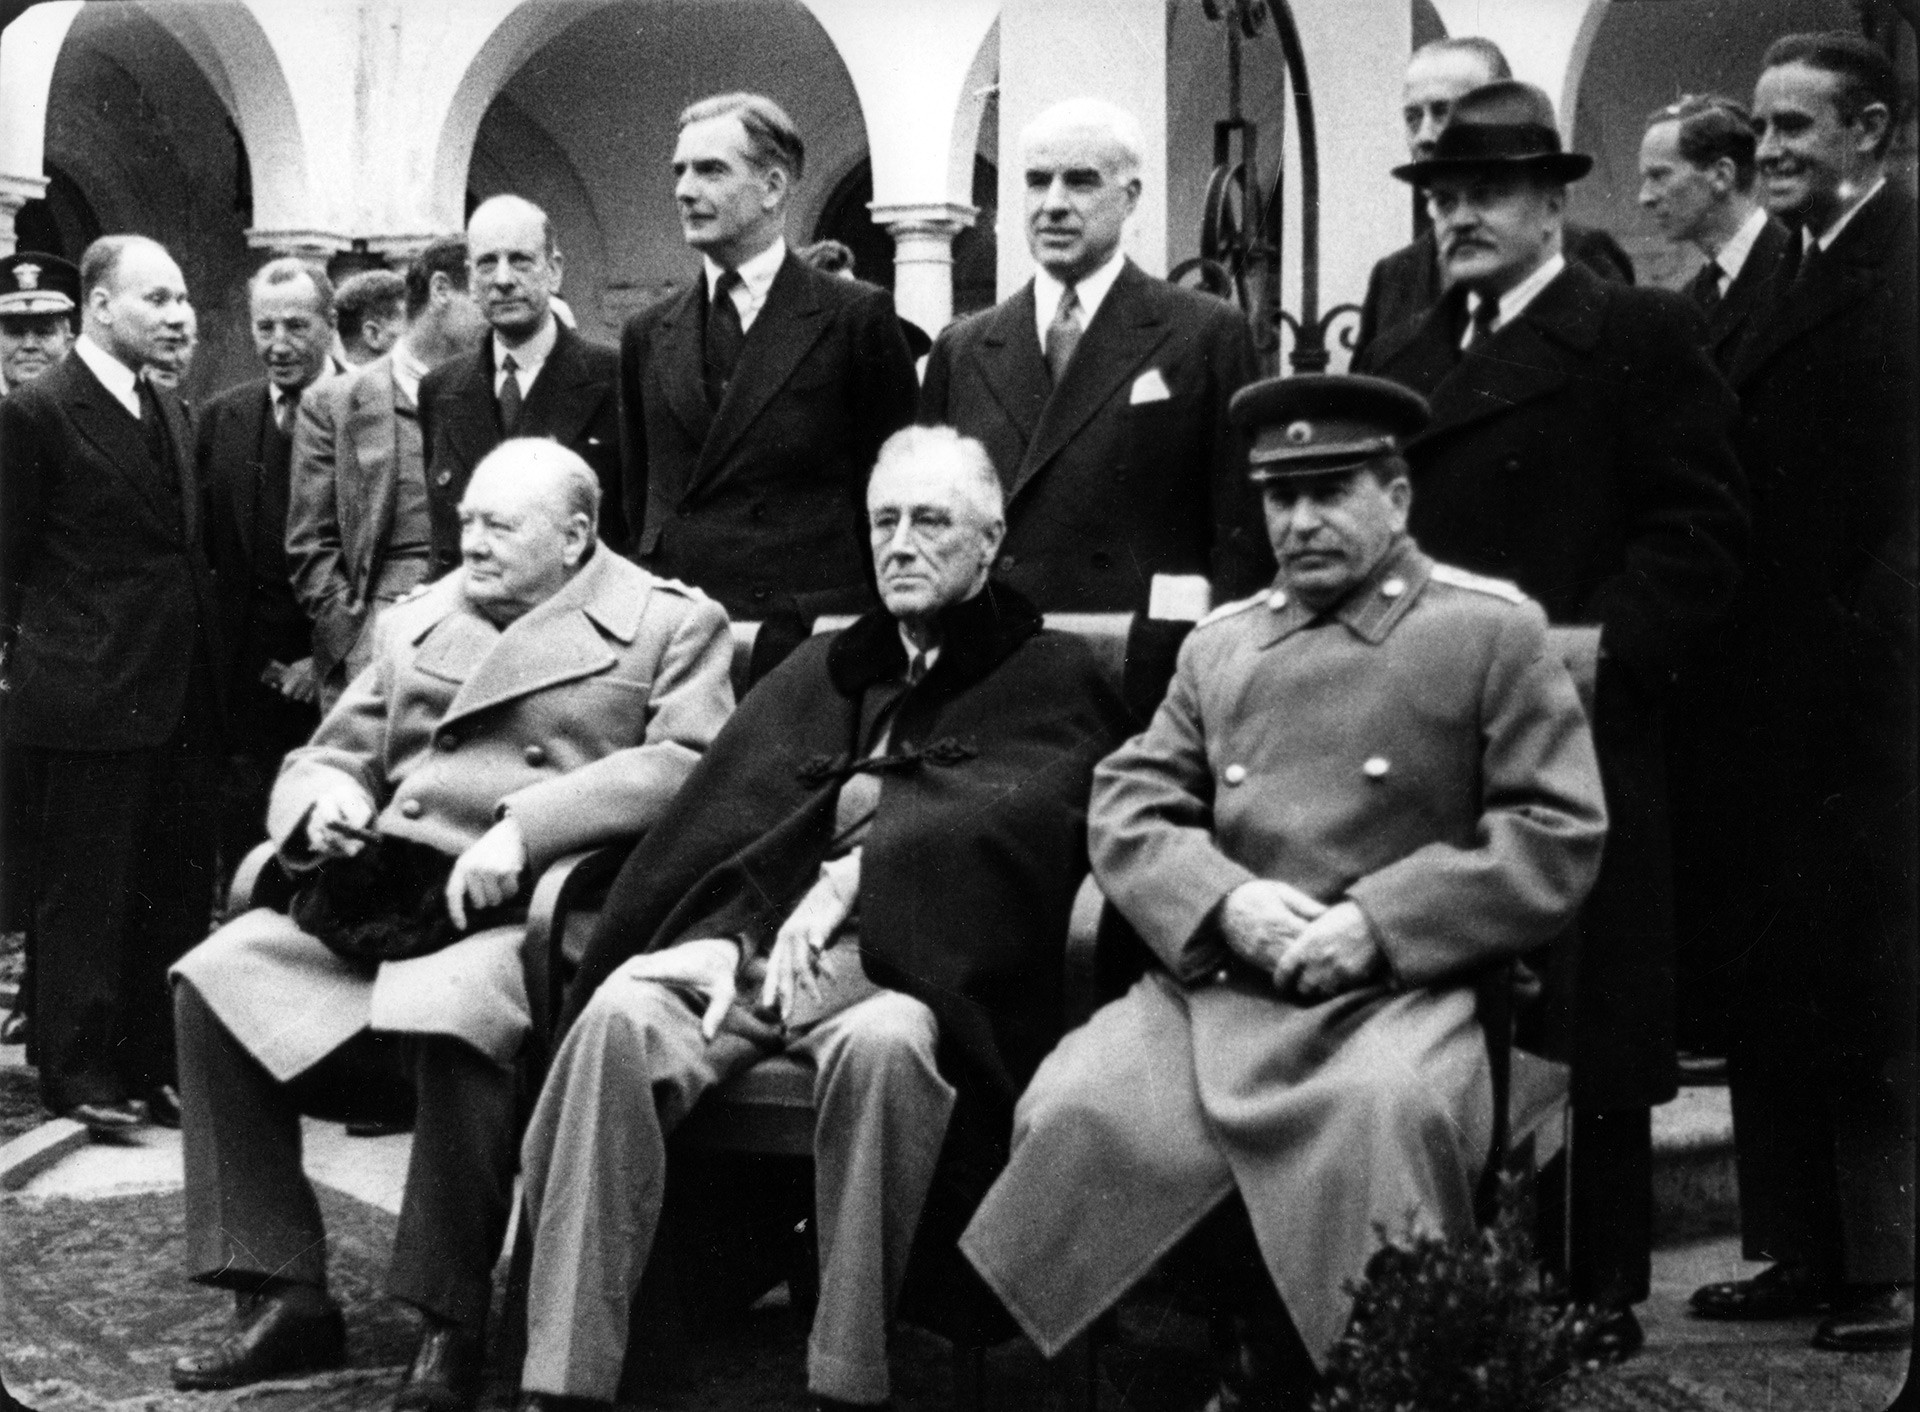 „Велика тројка” на Конференцији у Јалти. На слици: (слева надесно) Јосиф Стаљин, Френклин Рузвелт и Винстон Черчил.